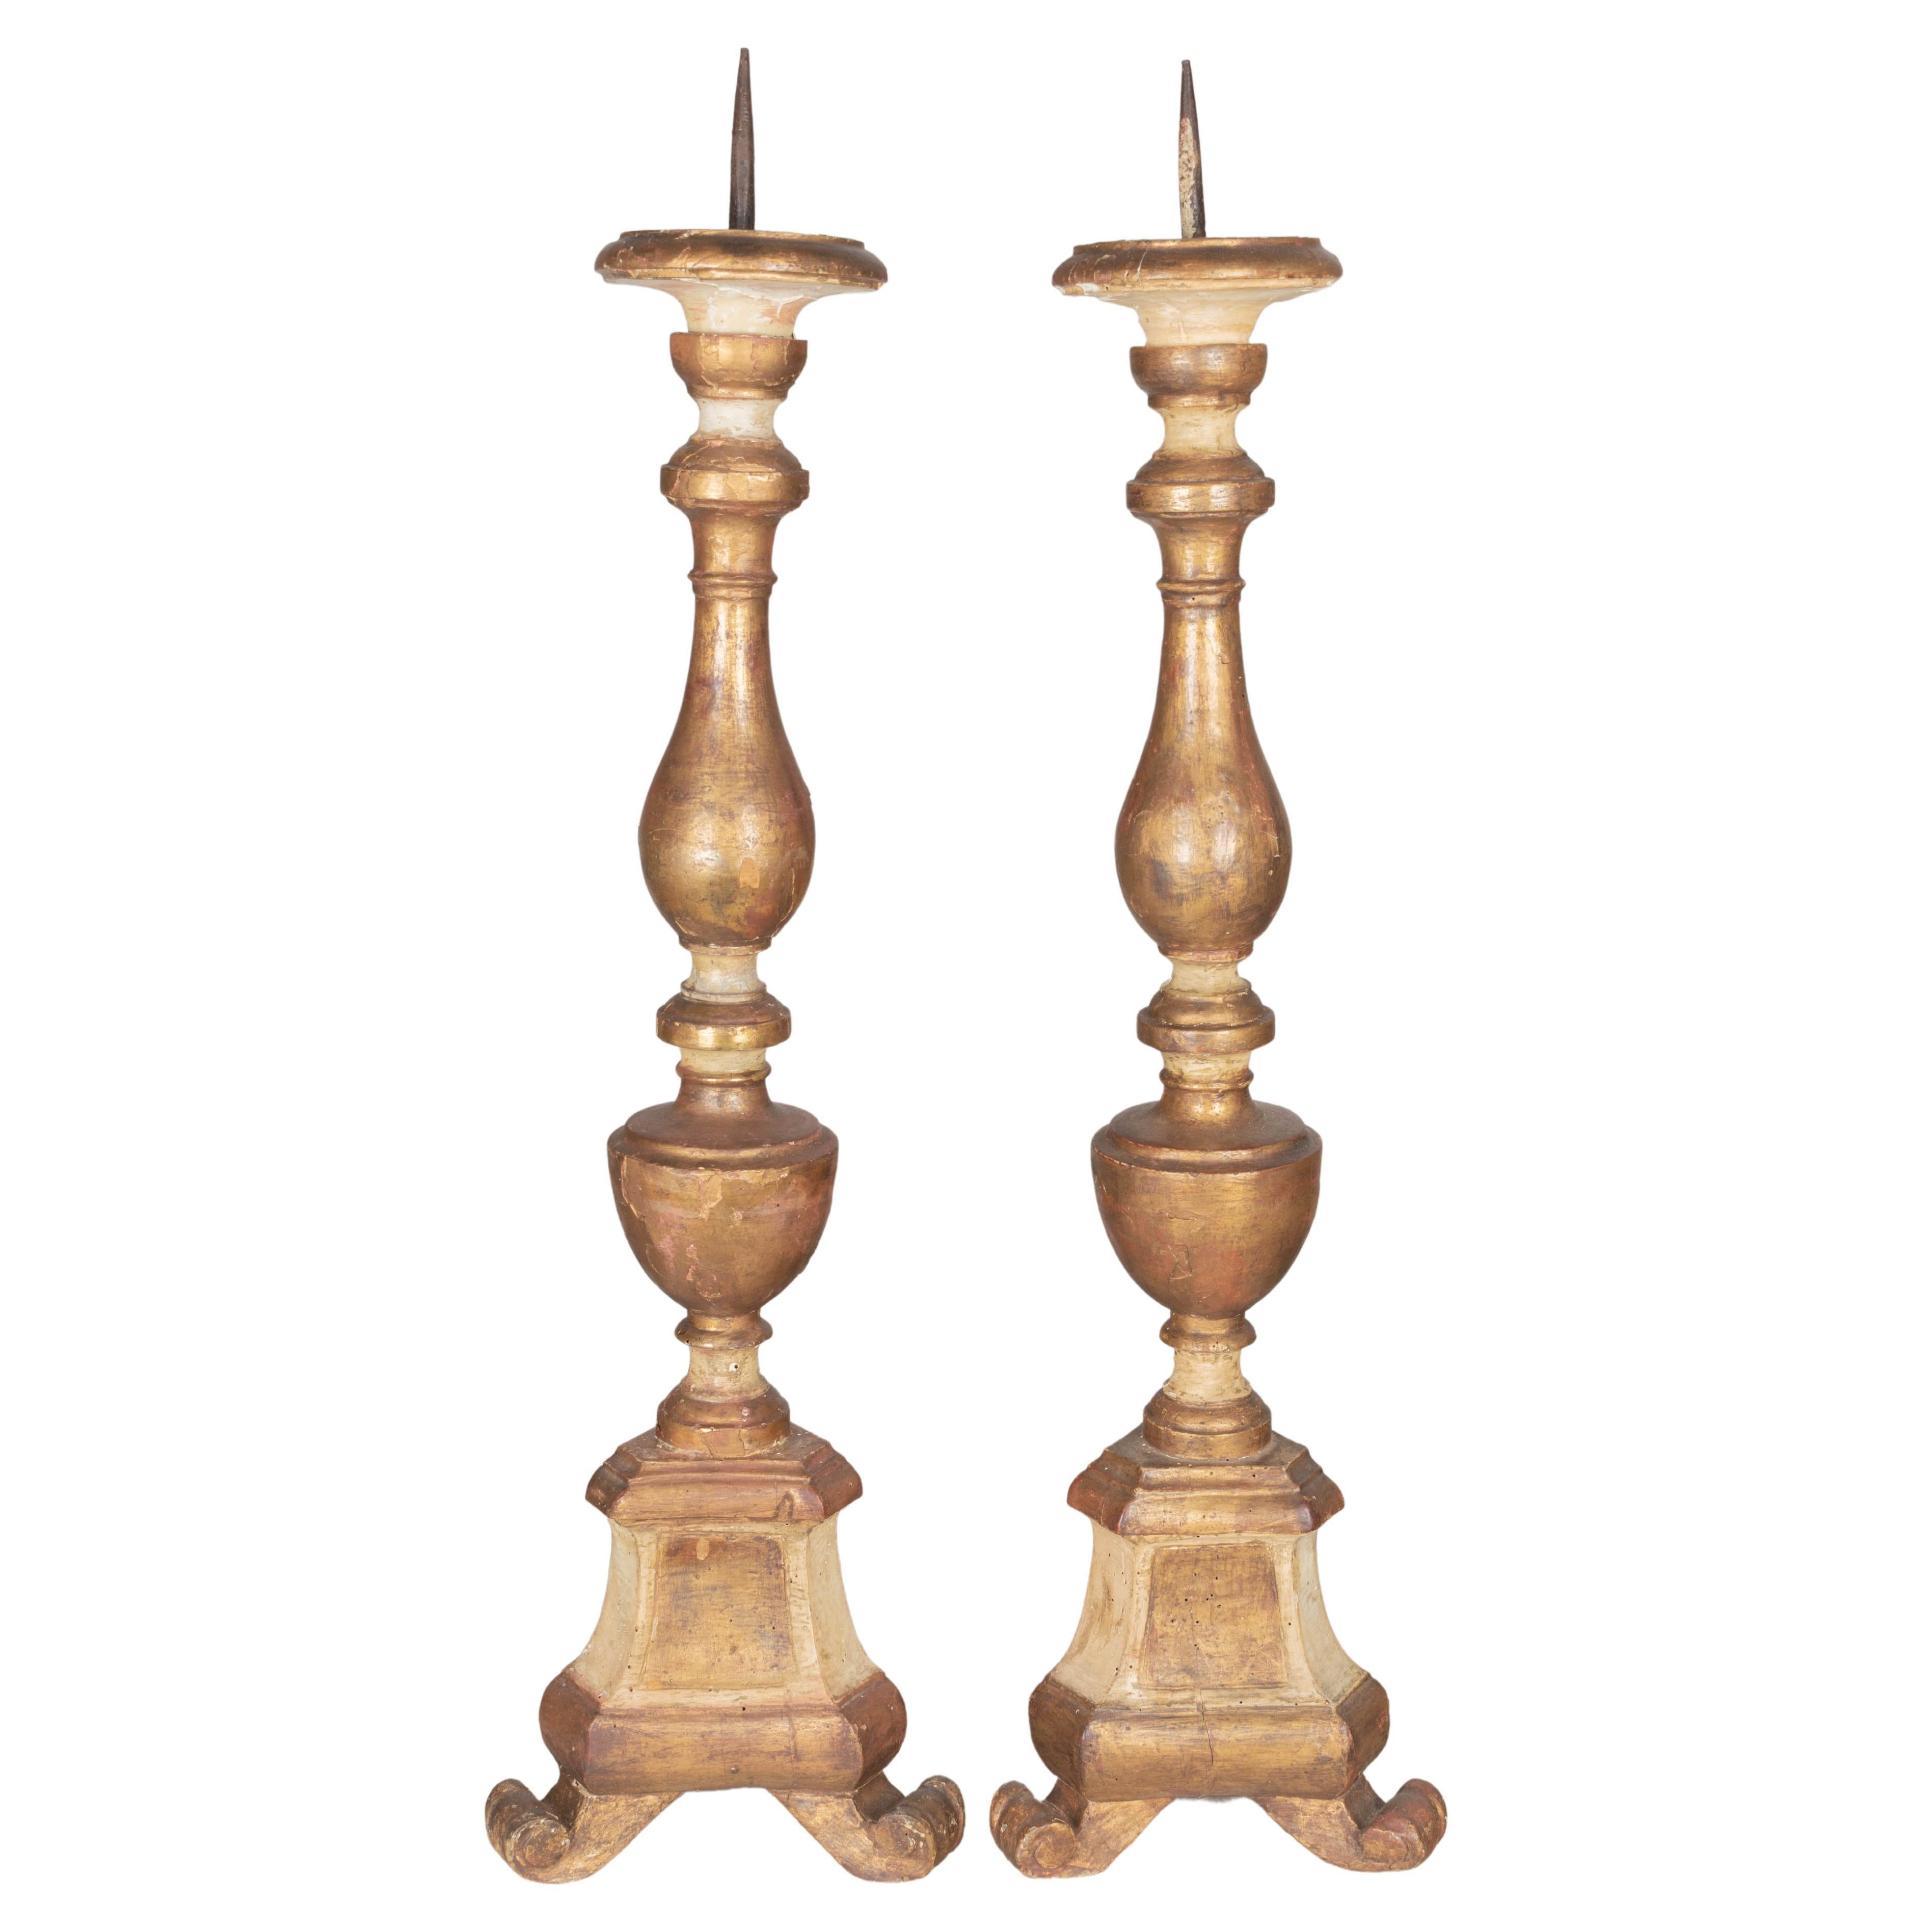 Paire de chandeliers italiens en bois doré du XVIIIe siècle